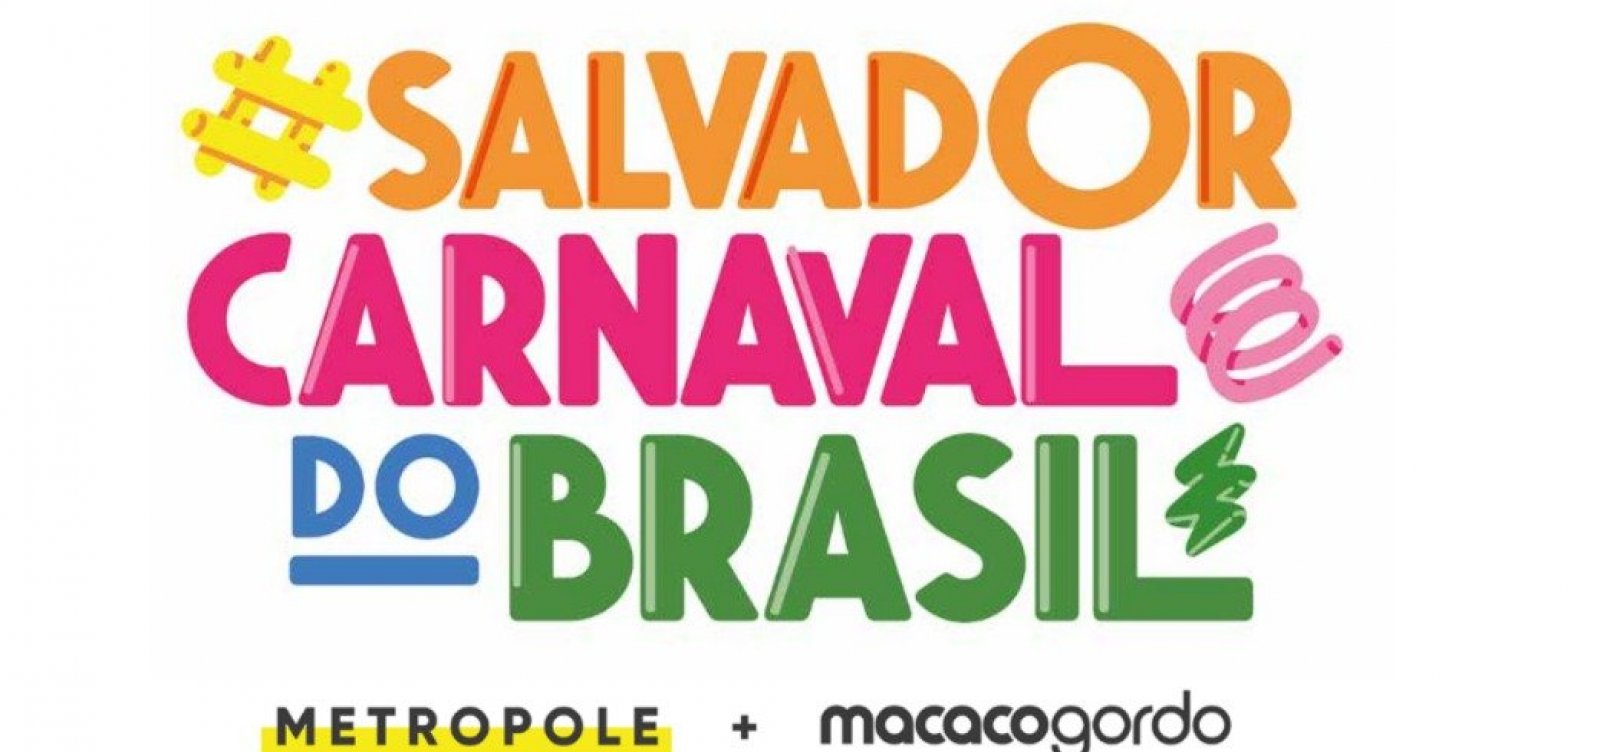 Atrás do trio: Metropole e Macaco Gordo se unem em uma transmissão de mais de 100h no Carnaval de Salvador